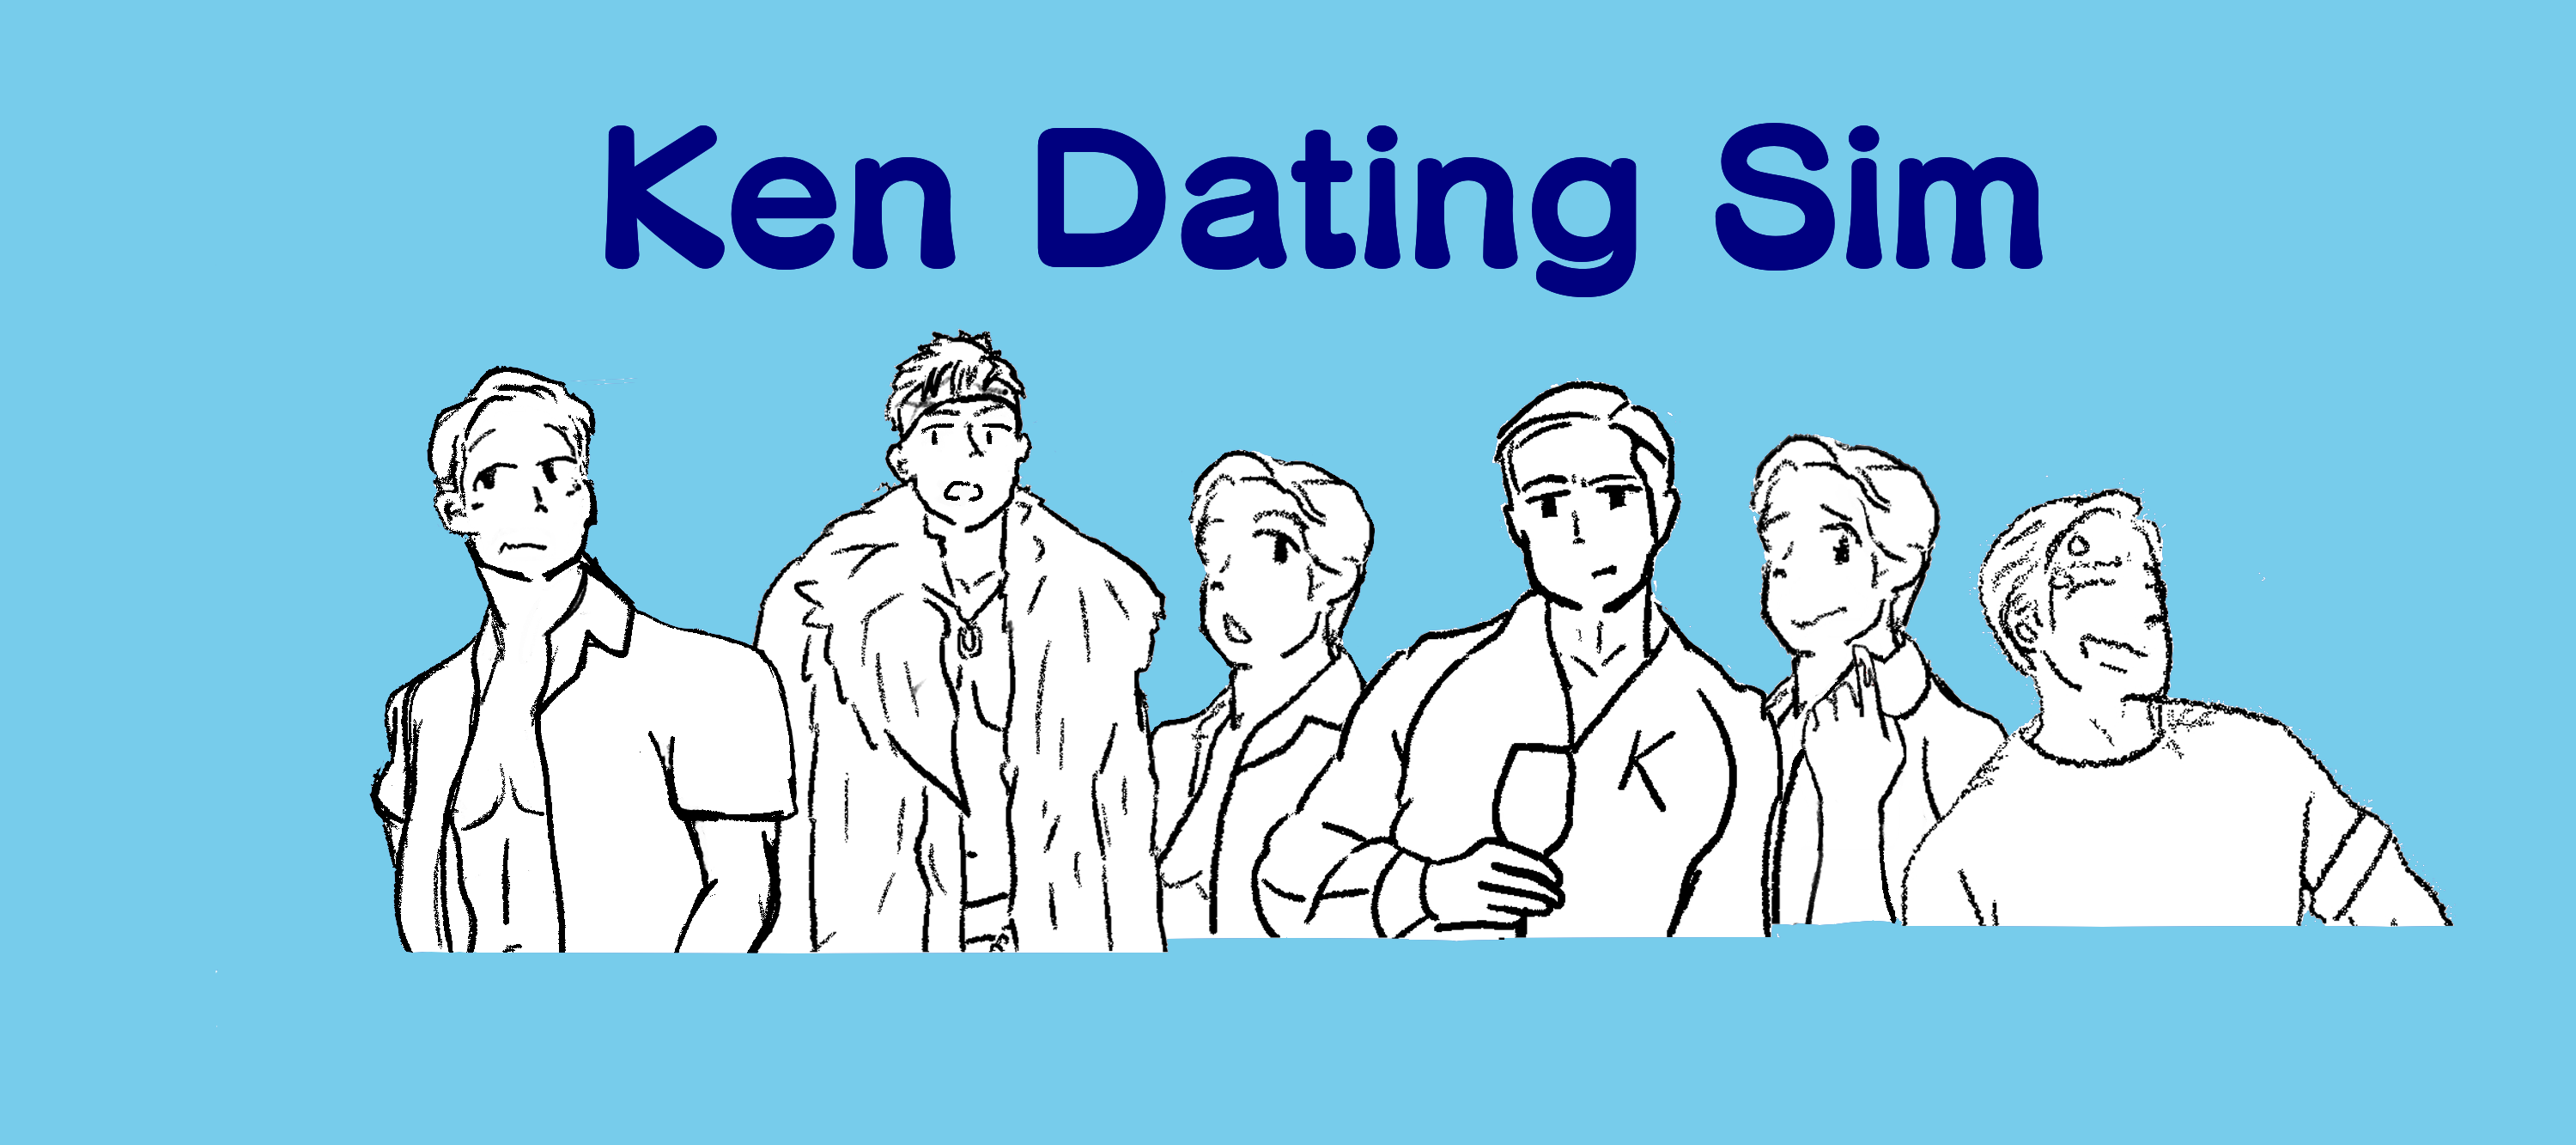 Ken Dating Sim